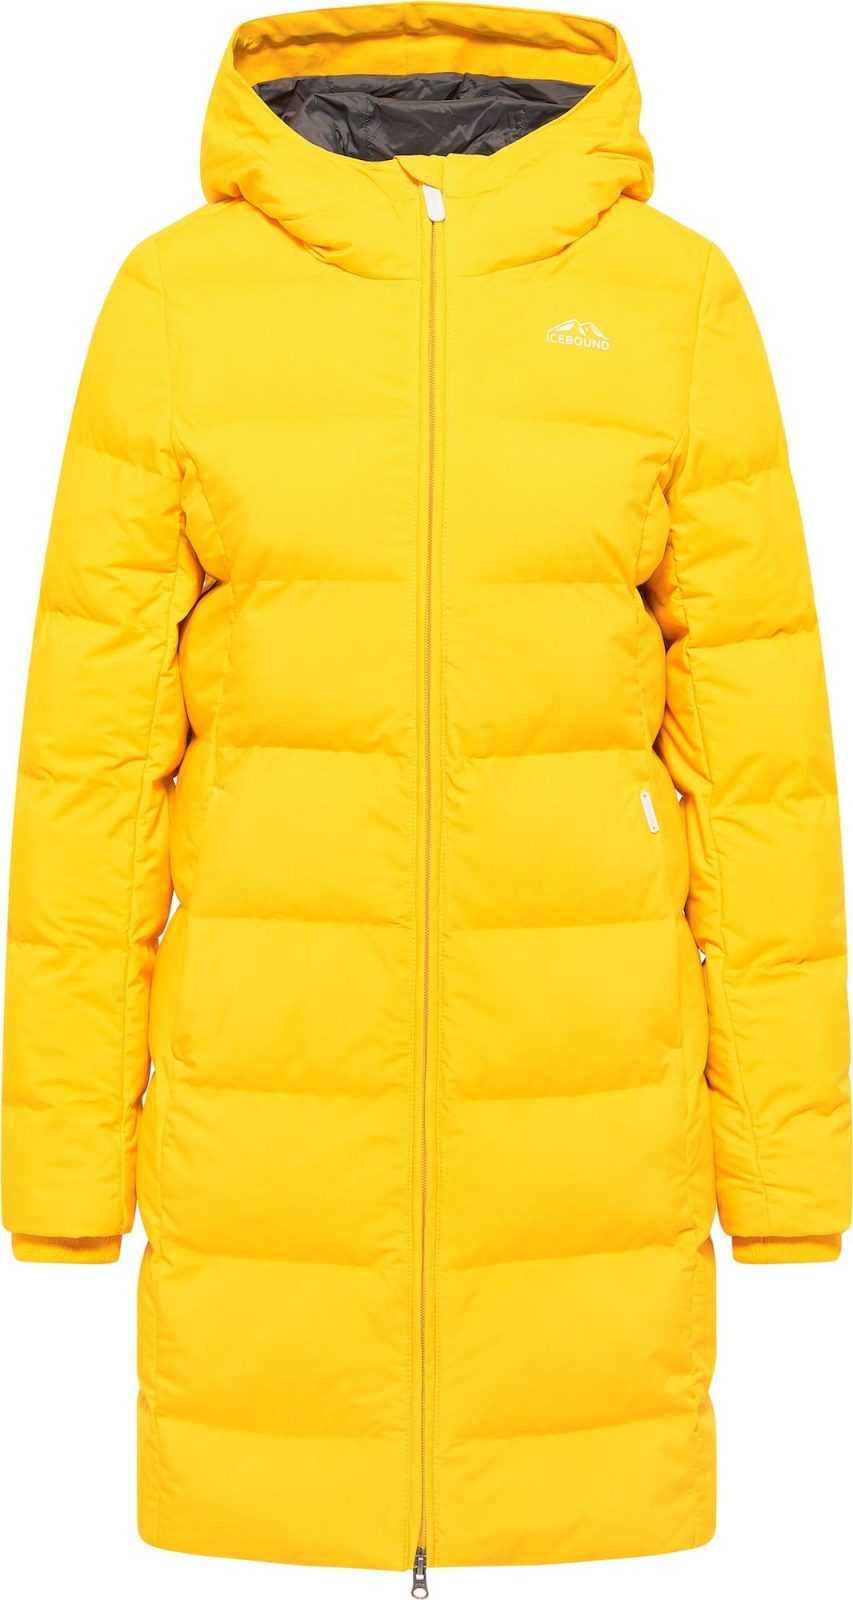 ICEBOUND Zimní kabát žlutá